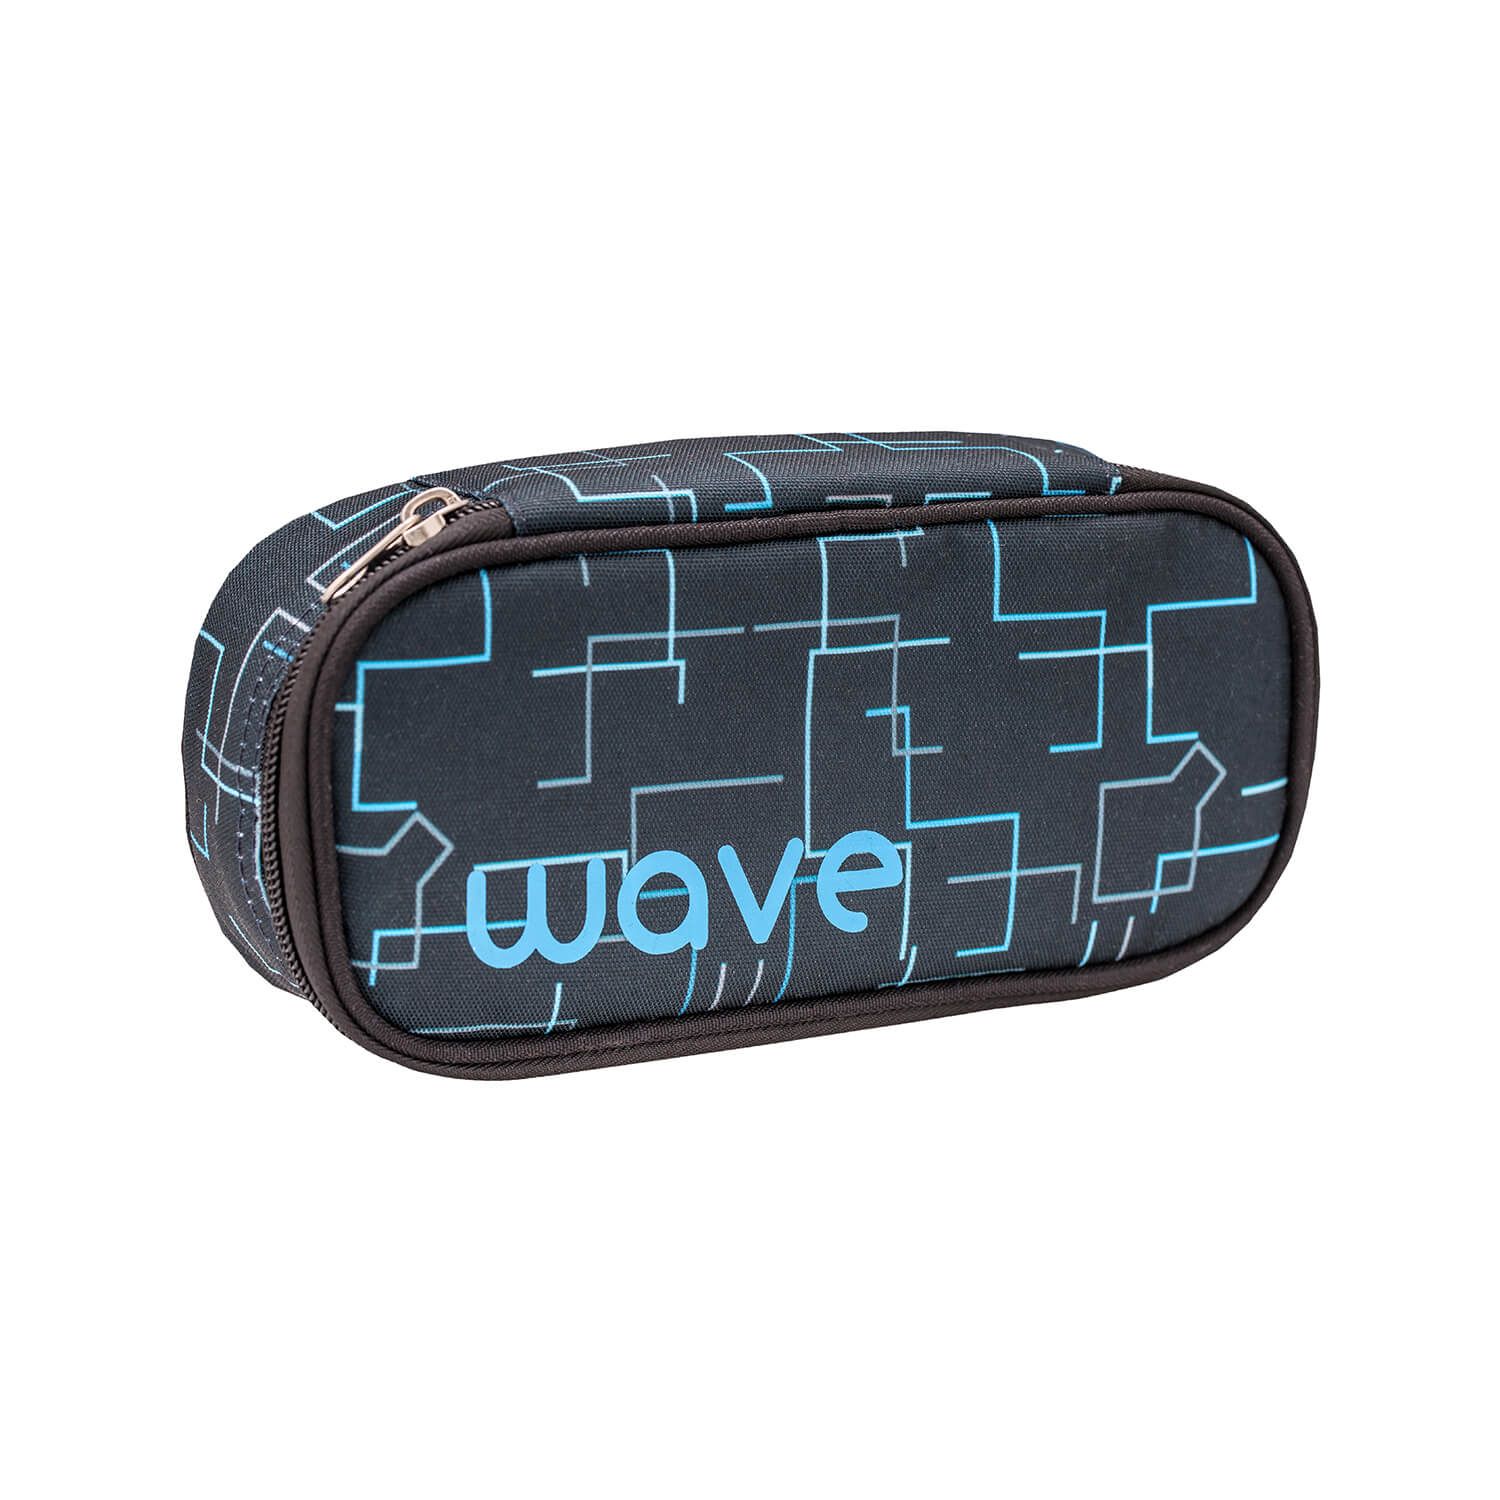 WAVE Schlamperbox Electrify - Cubic Neon Blue mit GRATIS Schlamperbox